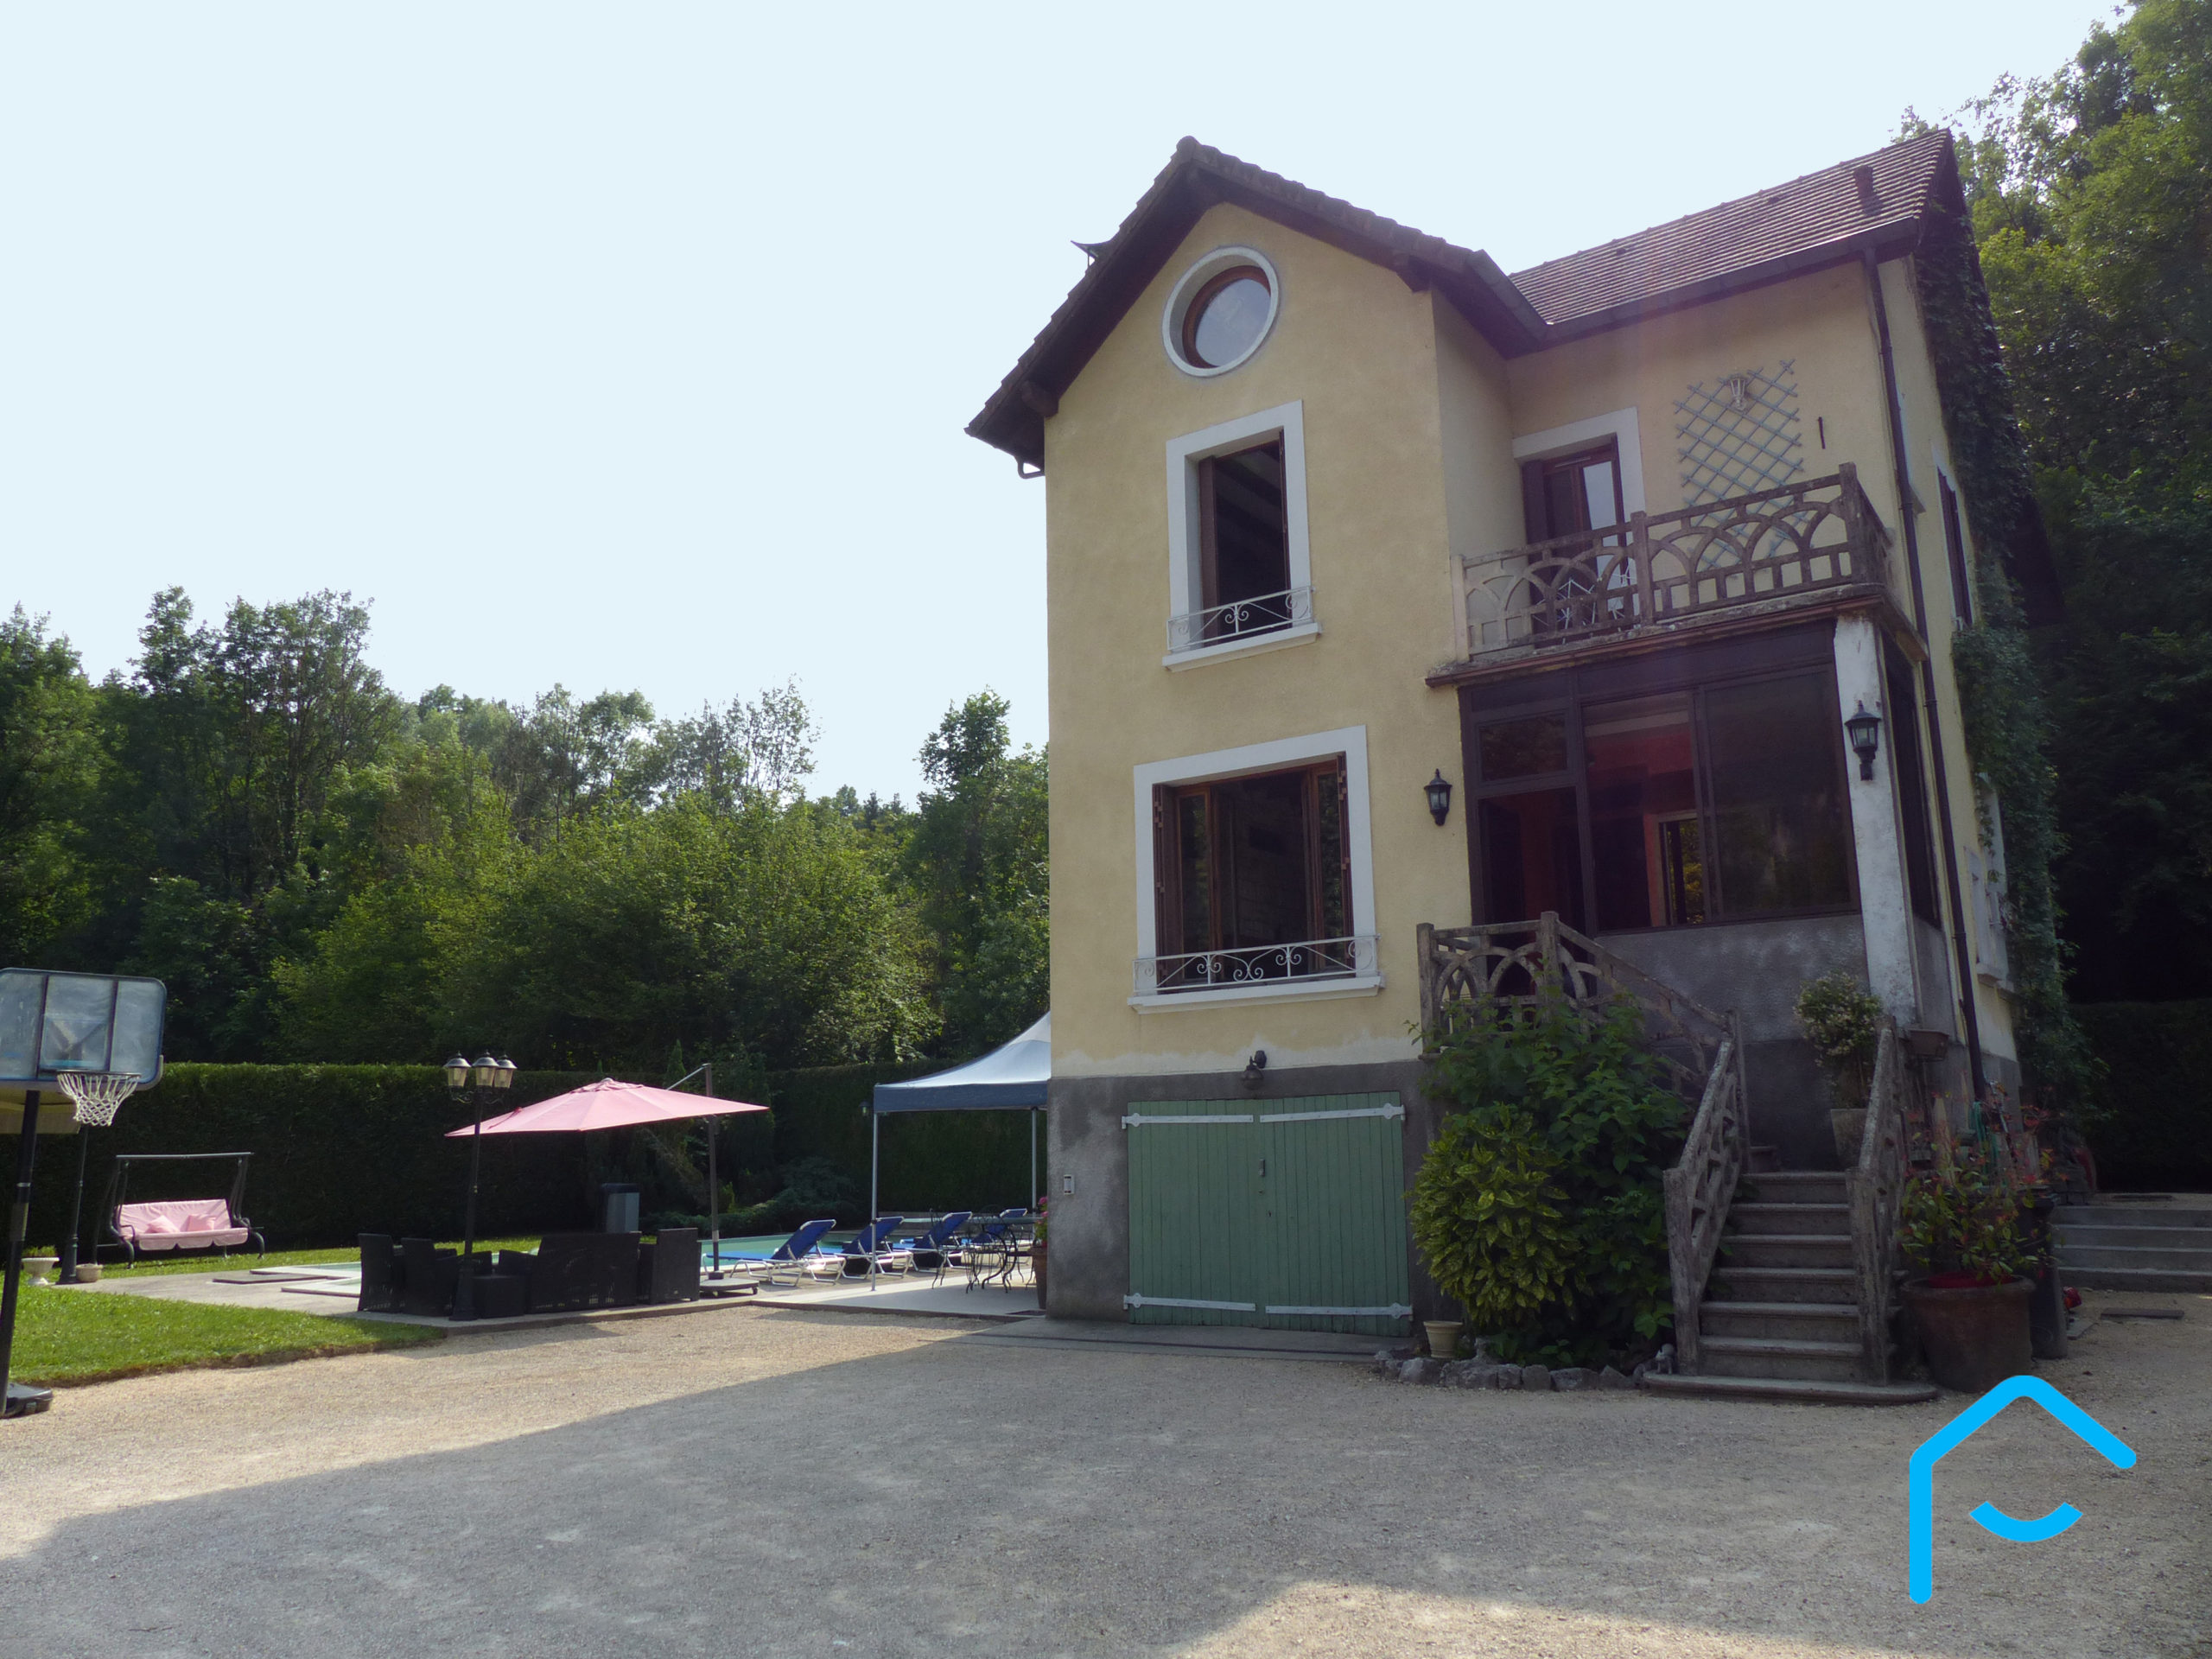 A vendre Savoie maison avec piscine terrain lac Aiguebelette vue 9